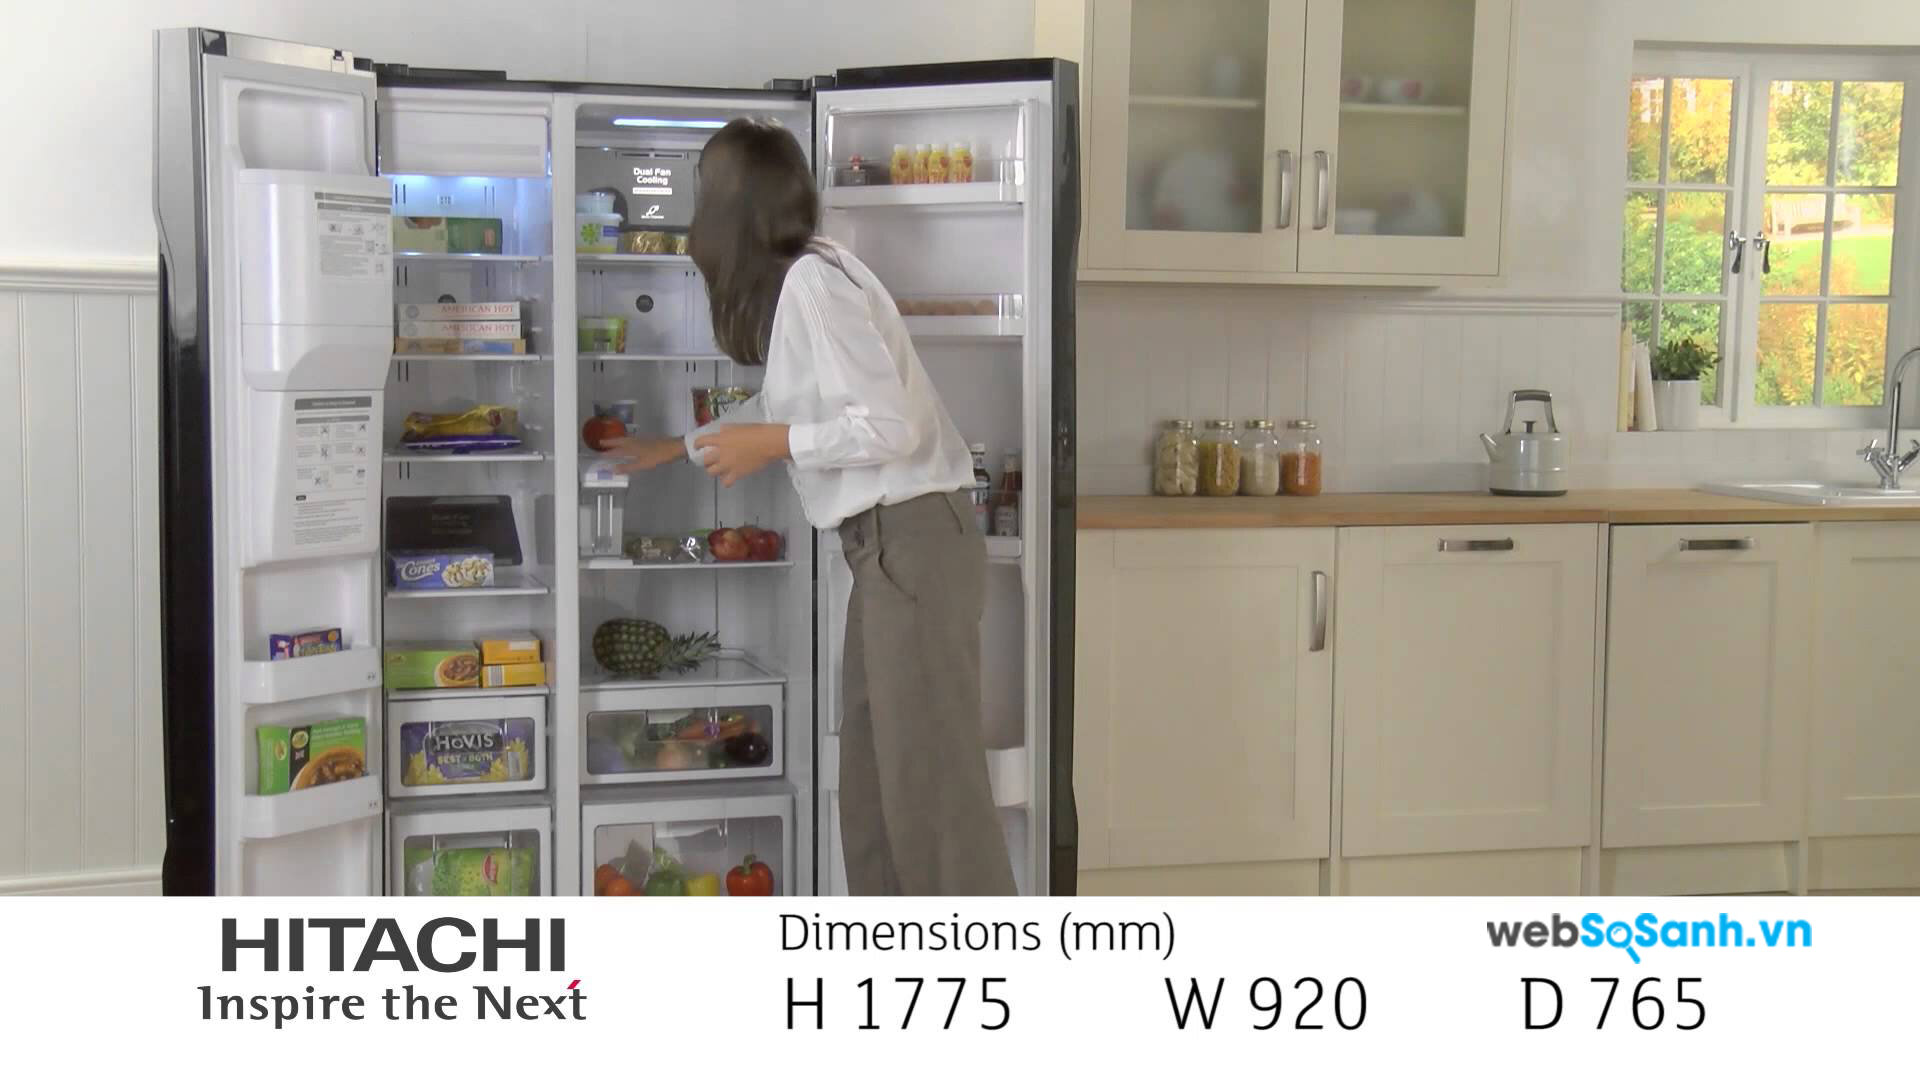 Hitachi là dòng tủ lạnh cao cấp được nhiều người ưa thích sử dụng